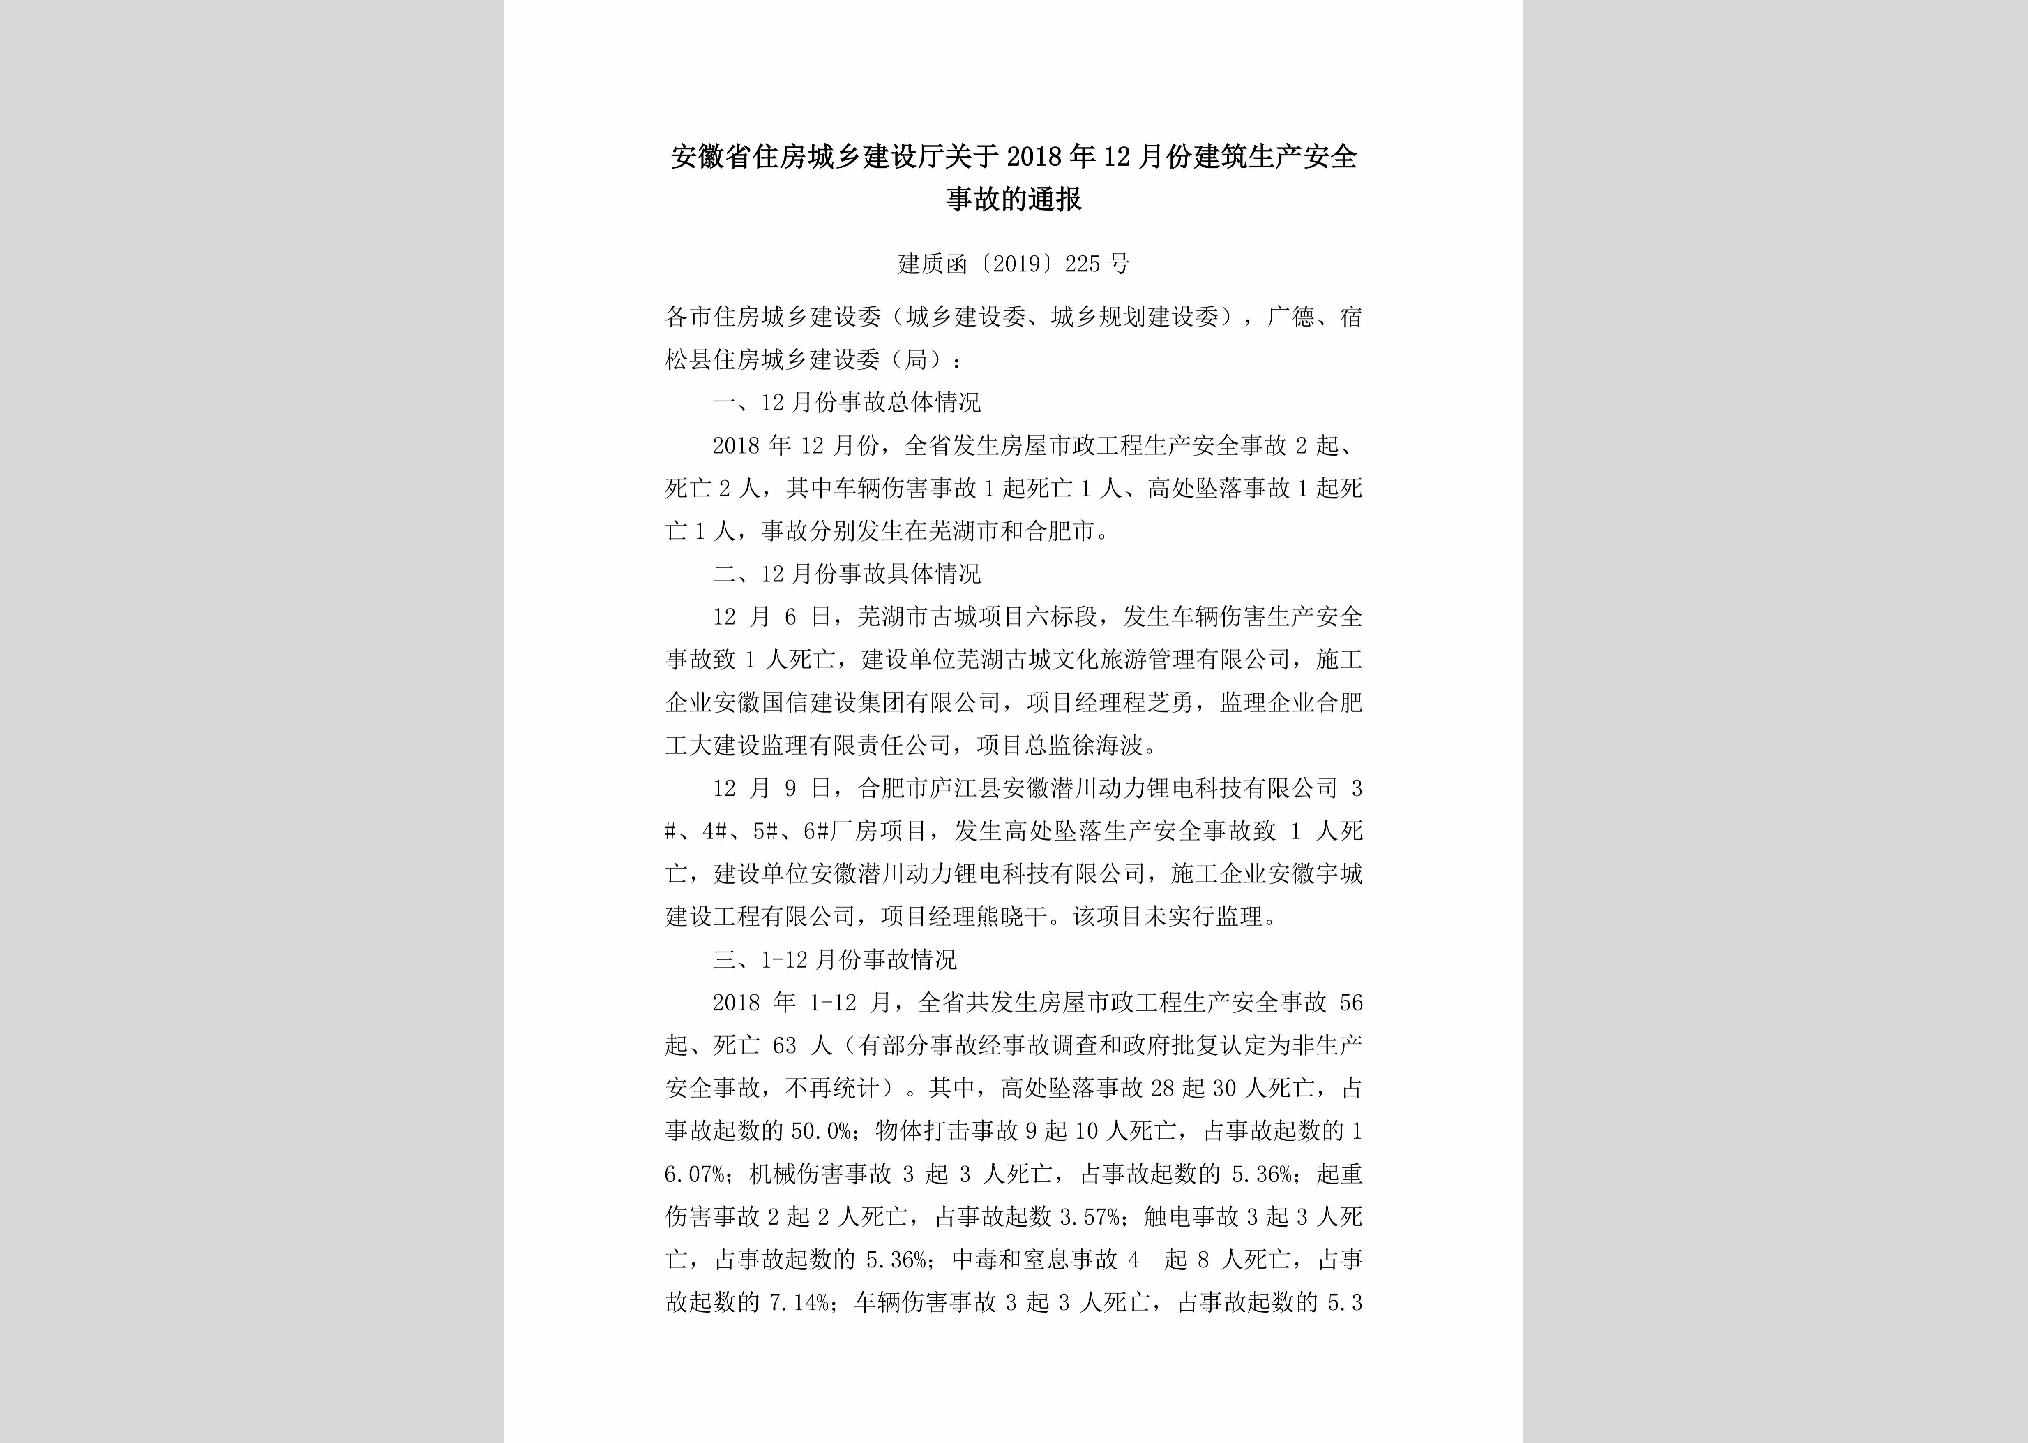 建质函[2019]225号：安徽省住房城乡建设厅关于2018年12月份建筑生产安全事故的通报